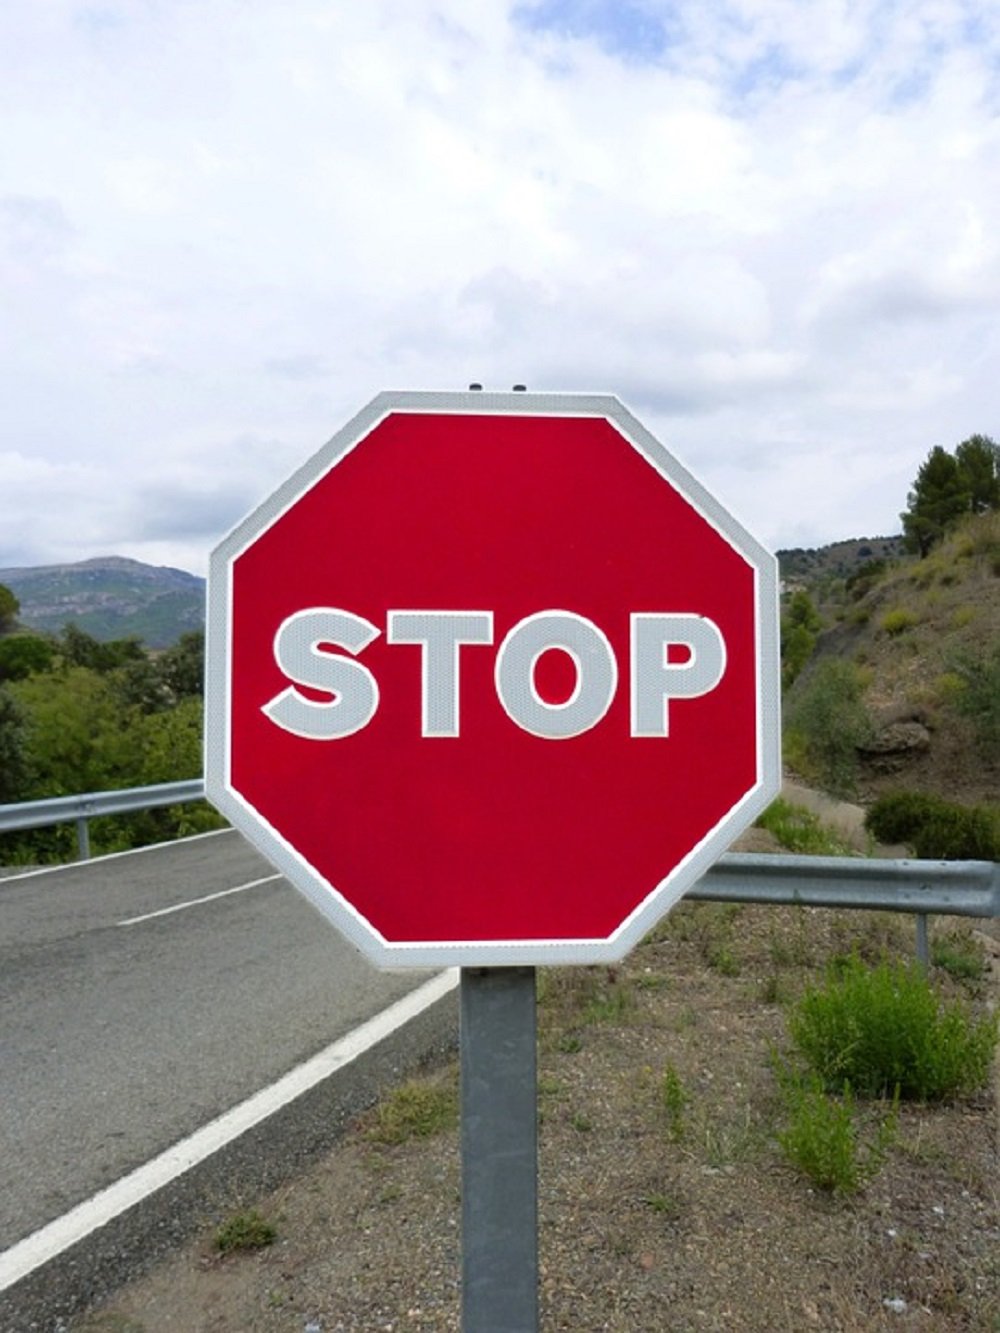 Esplugues da marcha atrás a rotular en castellano las señales de tráfico